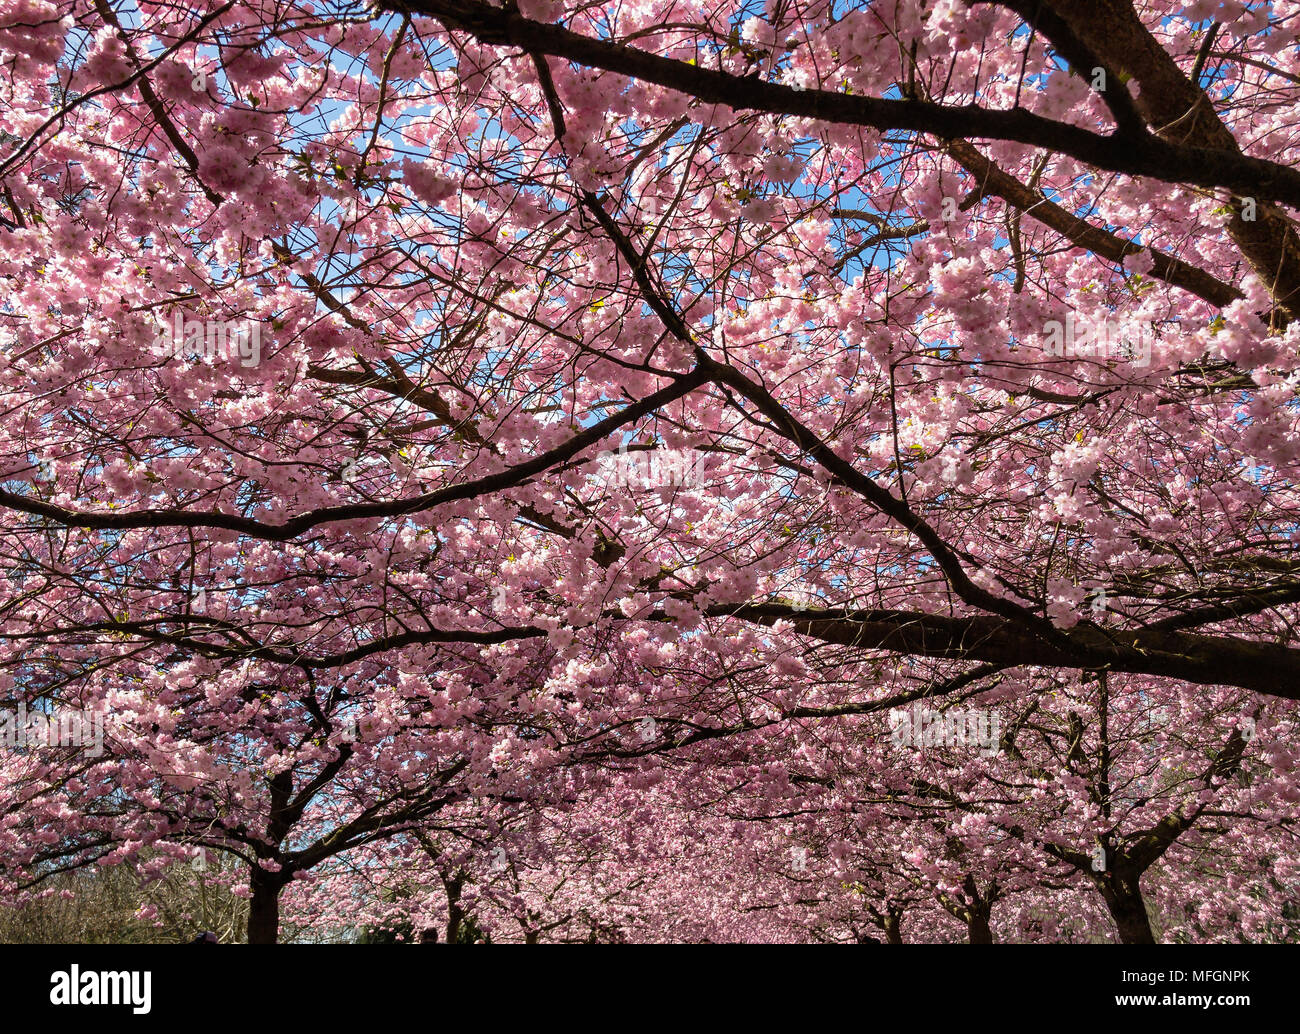 La floraison des cerisiers en avril Bispeengen, Danemark Banque D'Images